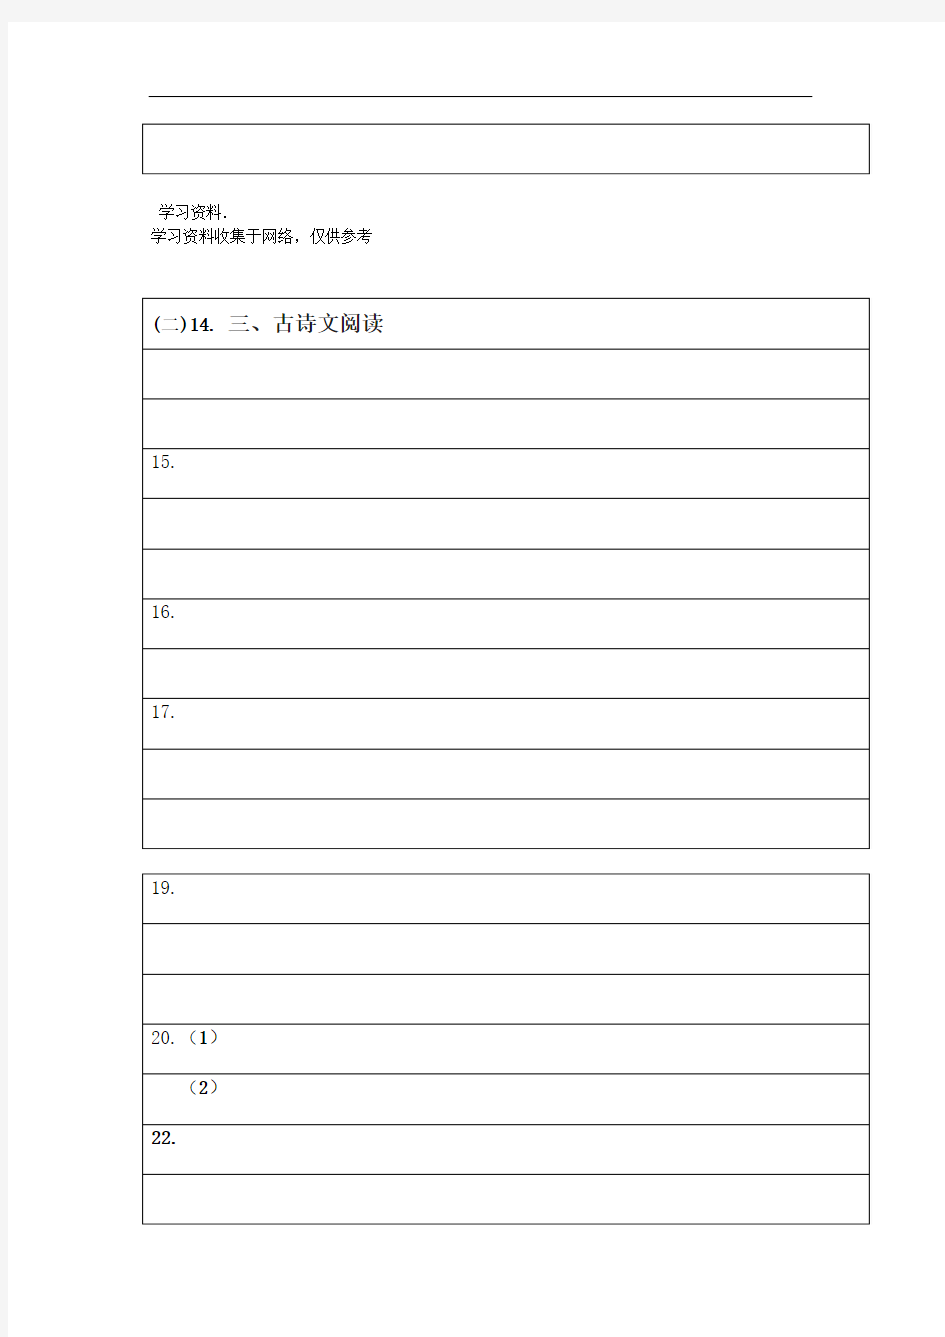 初中语文考试答题卡样式